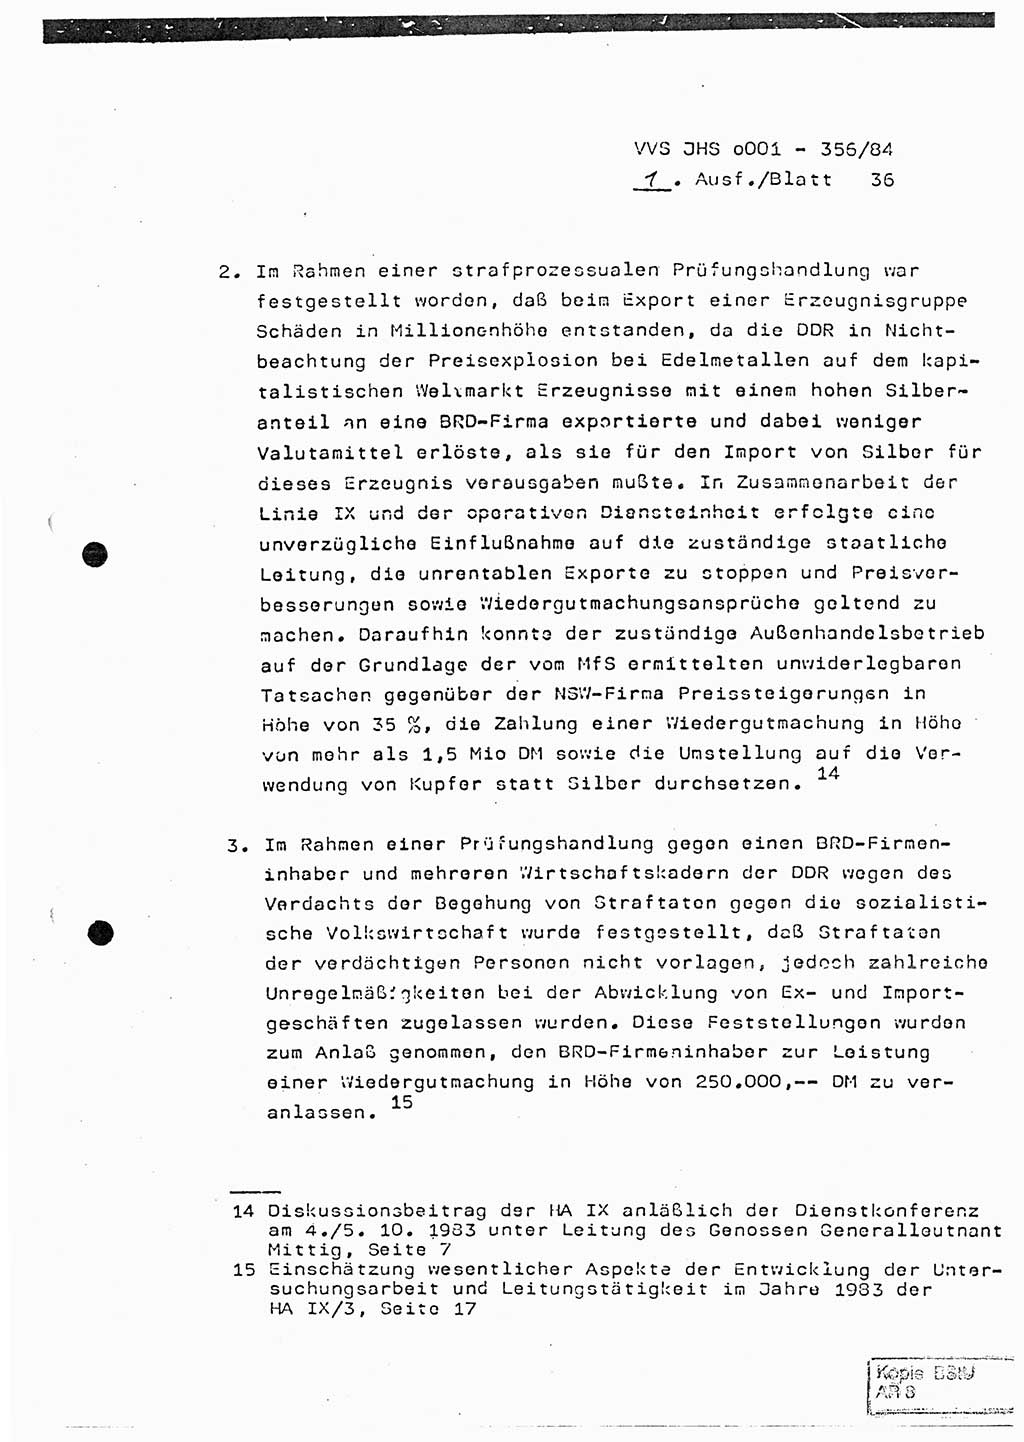 Diplomarbeit, Major Lutz Rahaus (HA Ⅸ/3), Ministerium für Staatssicherheit (MfS) [Deutsche Demokratische Republik (DDR)], Juristische Hochschule (JHS), Vertrauliche Verschlußsache (VVS) o001-356/84, Potsdam 1984, Seite 36 (Dipl.-Arb. MfS DDR JHS VVS o001-356/84 1984, S. 36)